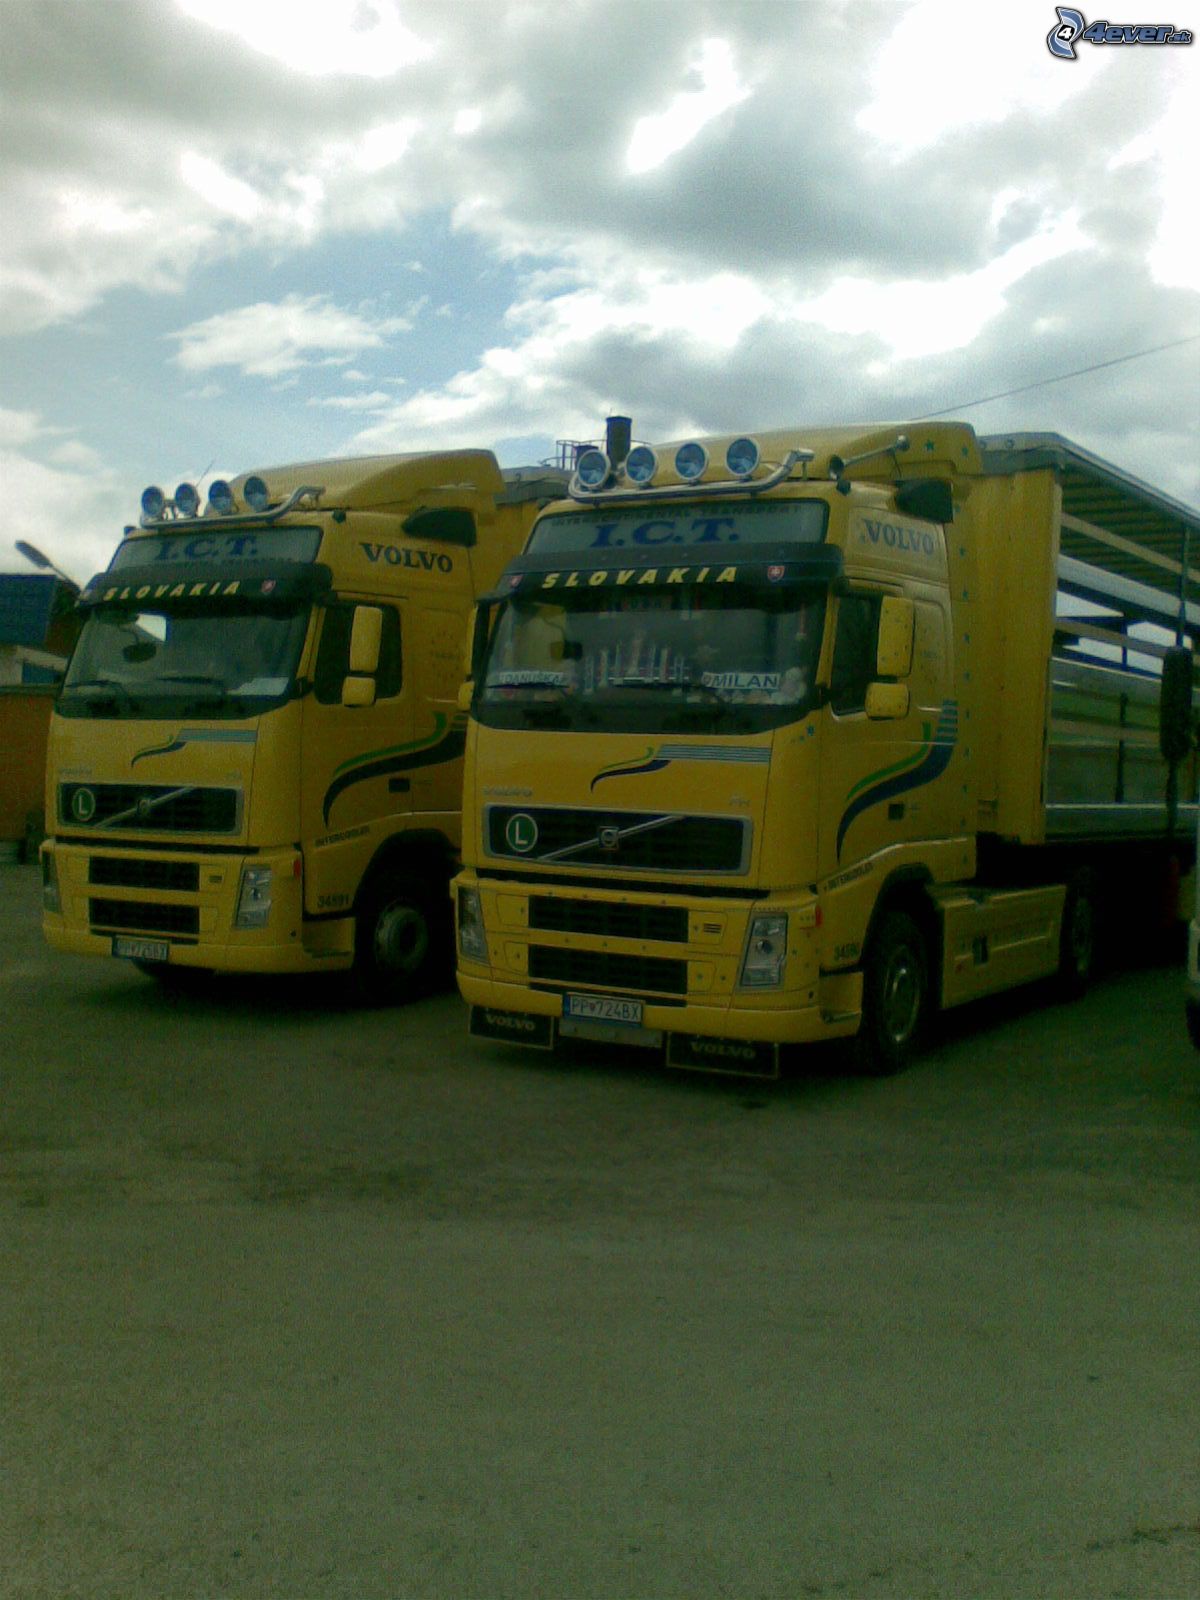 [obrazky.4ever.sk] Volvo FH12 460, kamion, Trucks 2168035